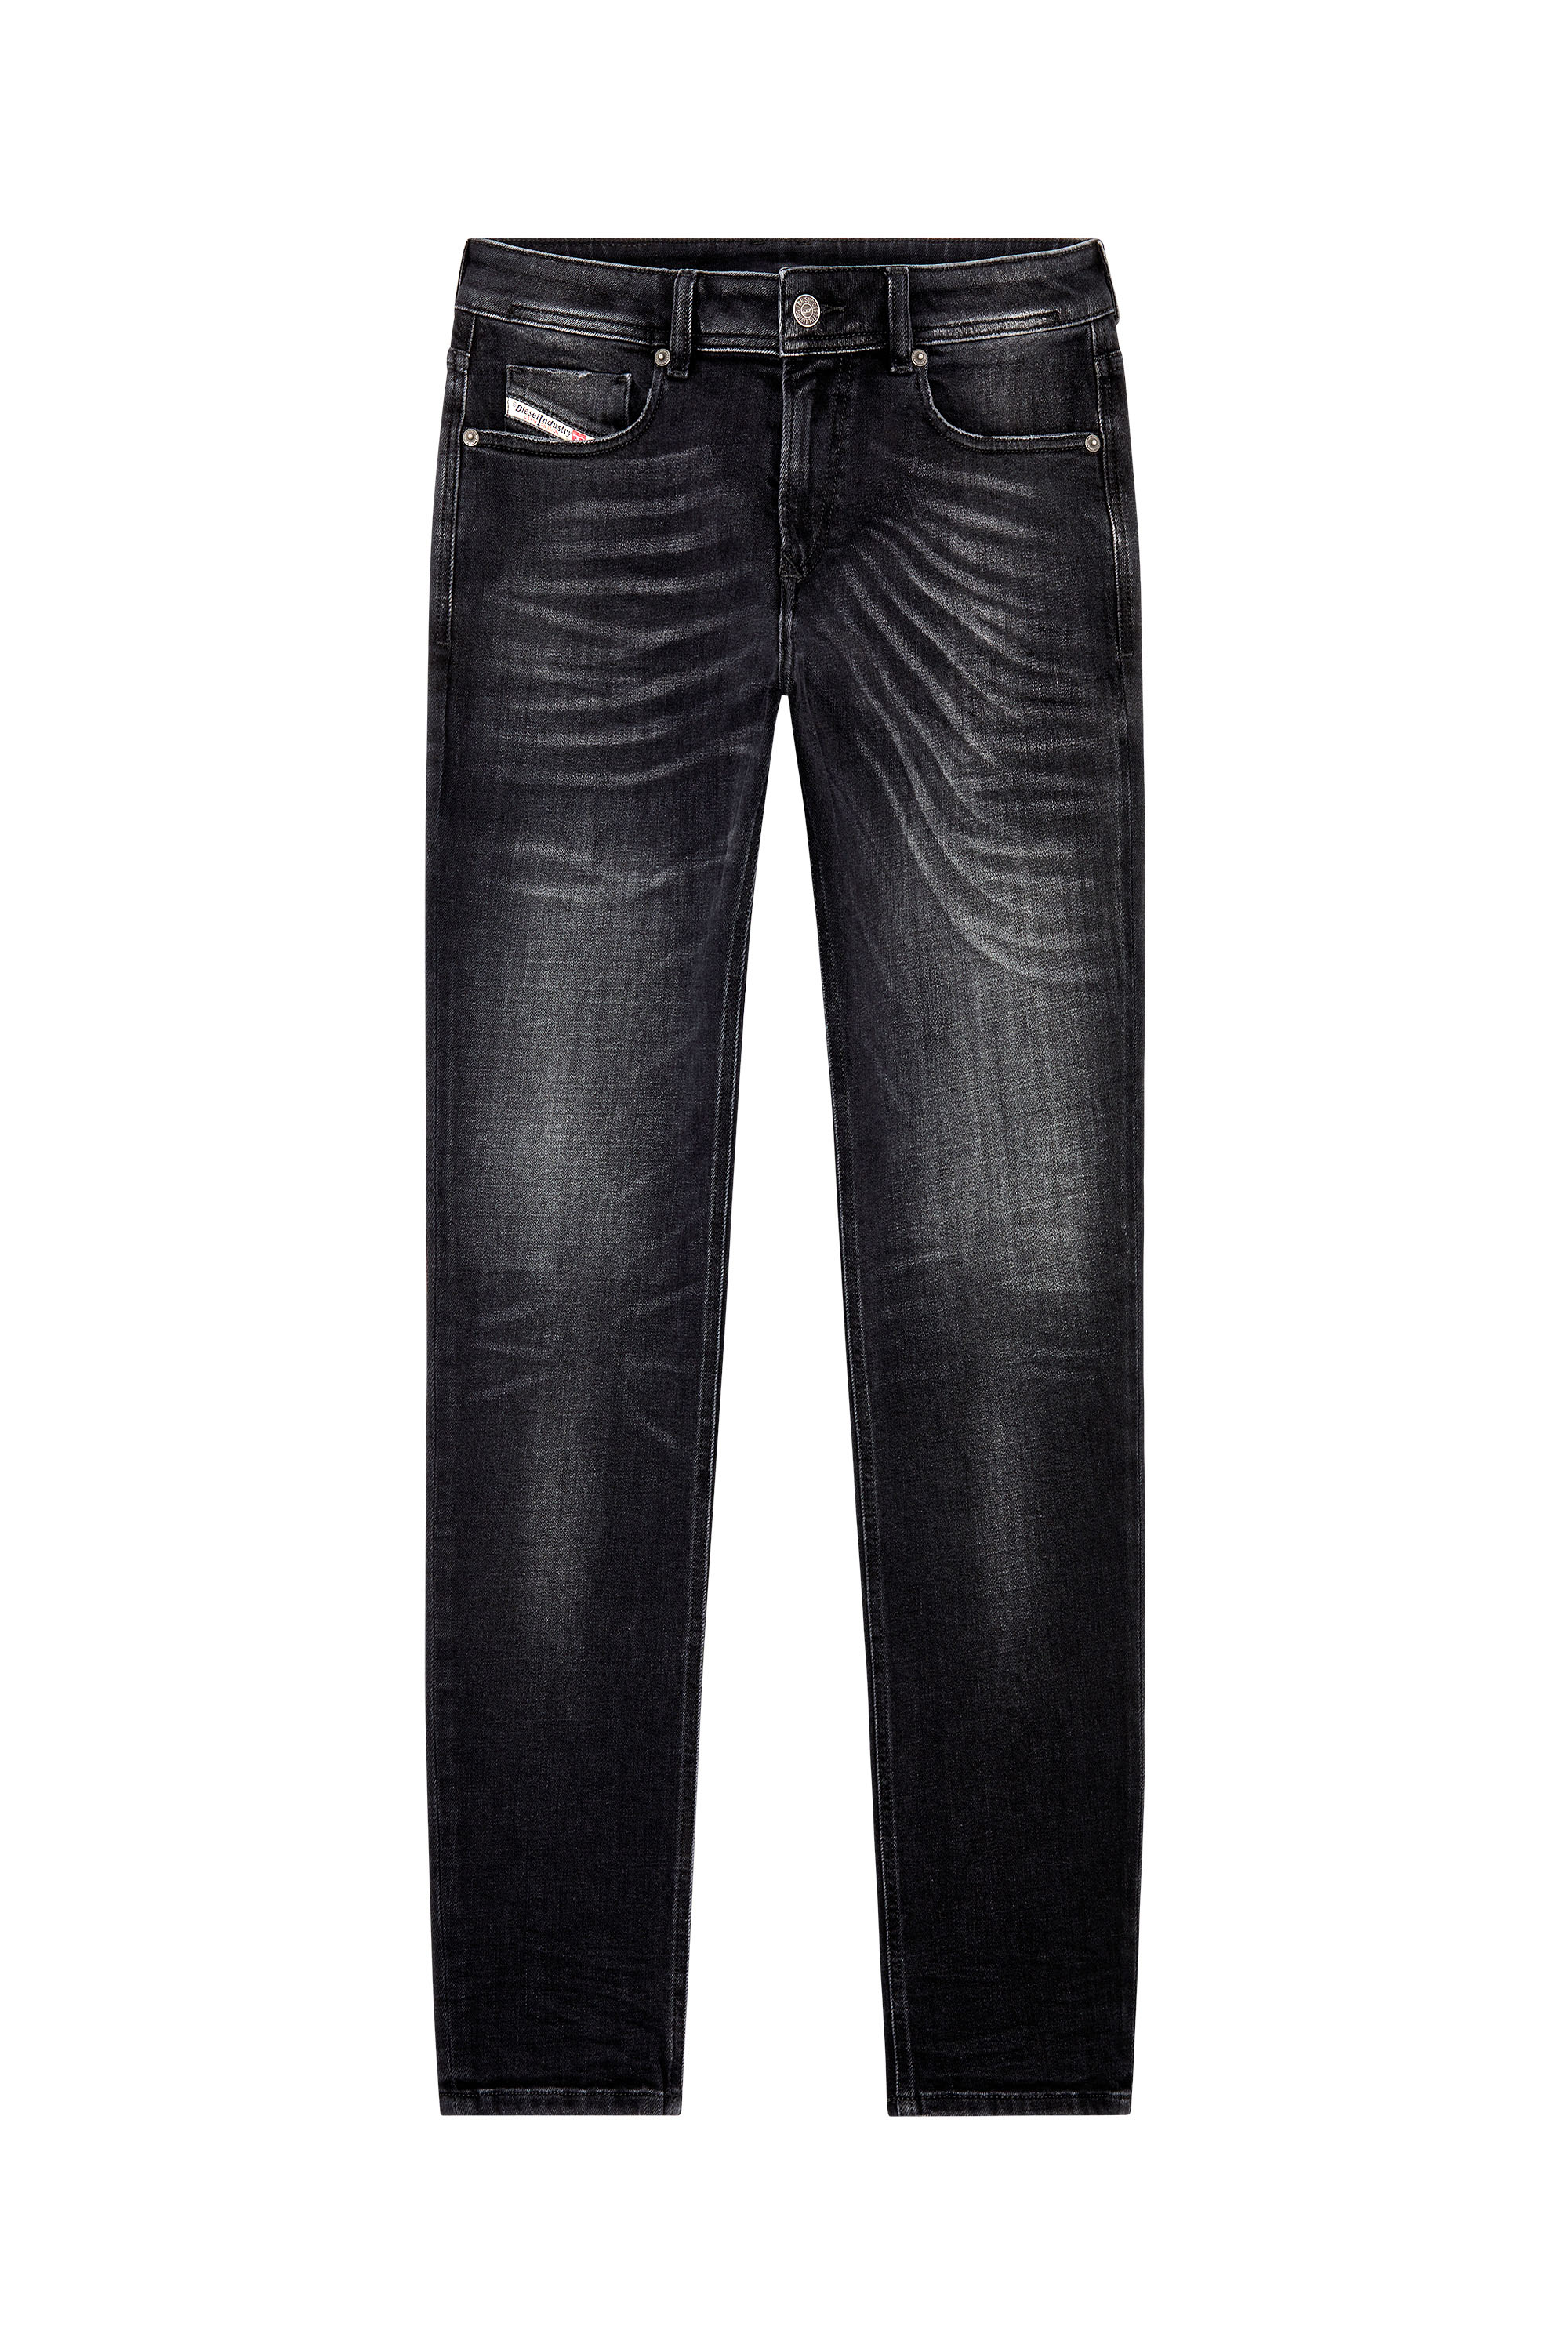 Diesel - Skinny Jeans 1979 Sleenker 09G54, Black/Dark grey - Image 5